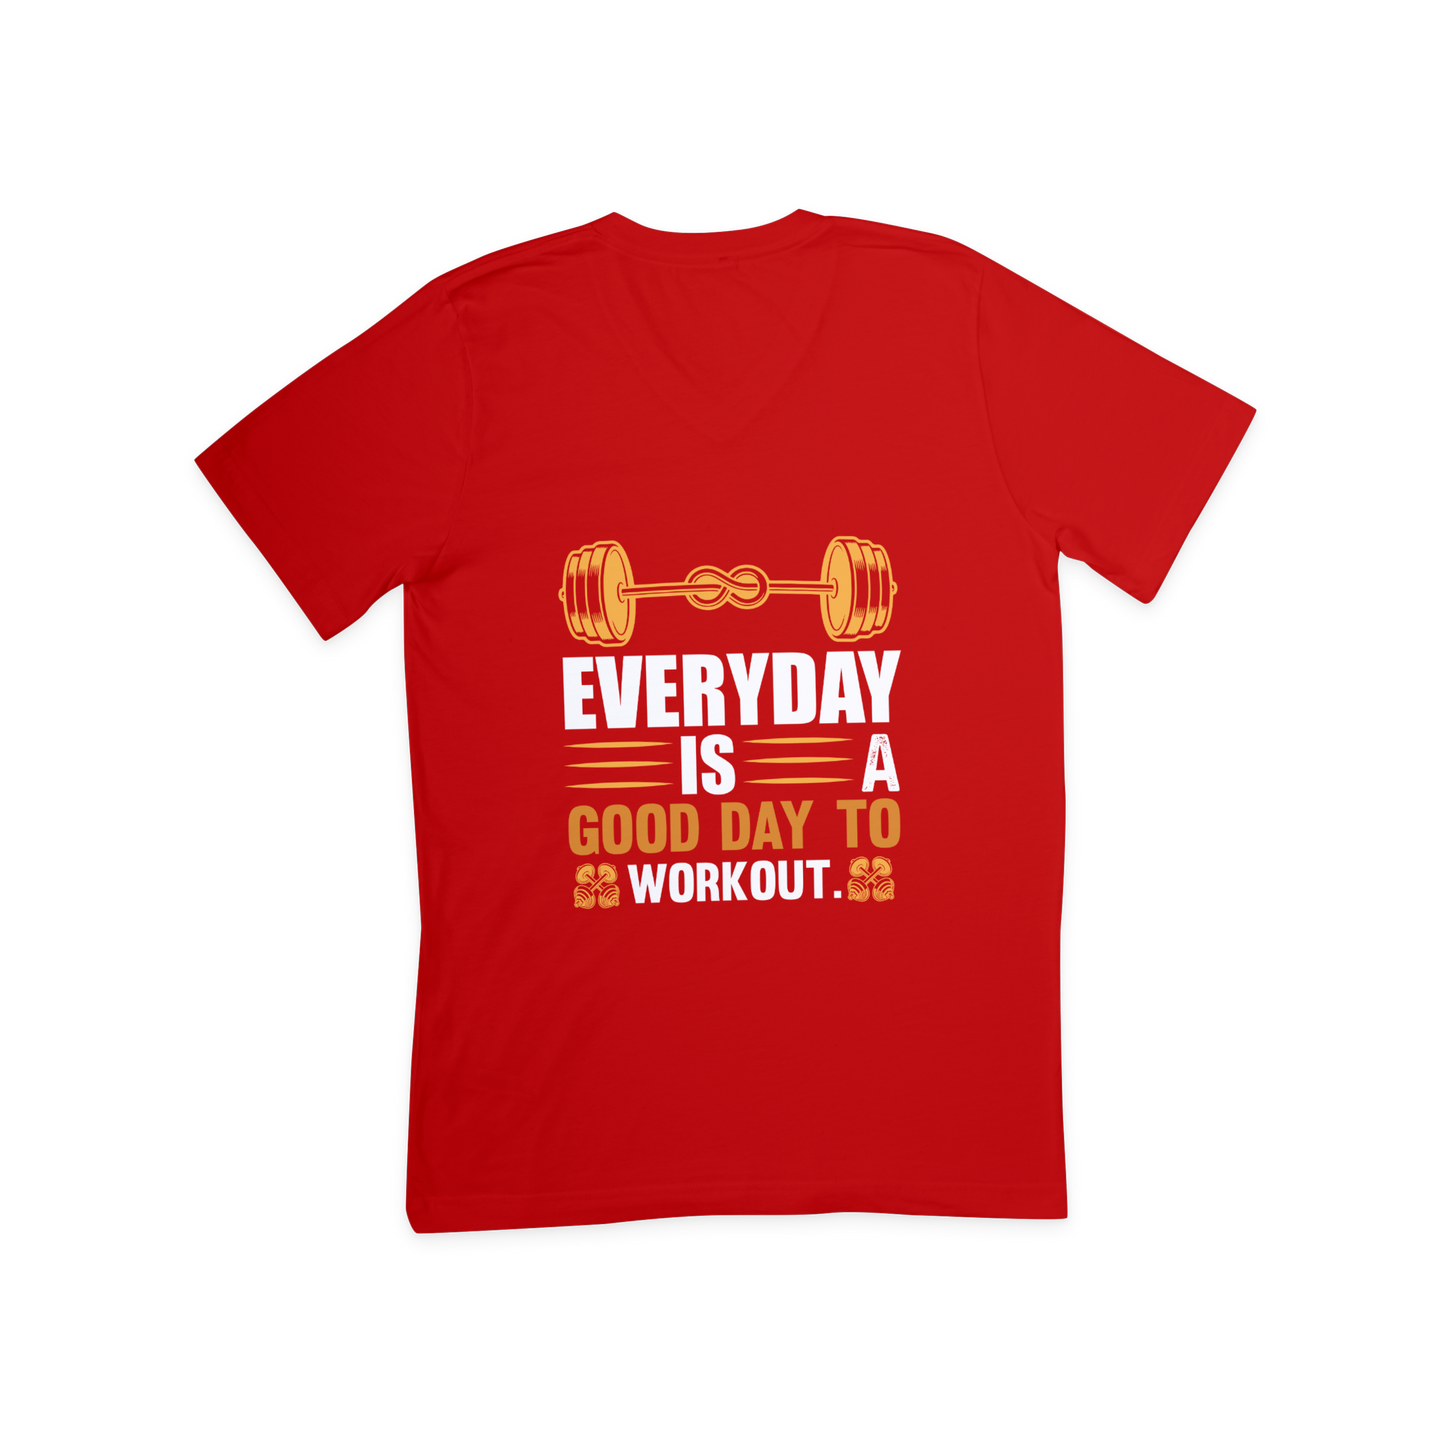 Workout design T shirt